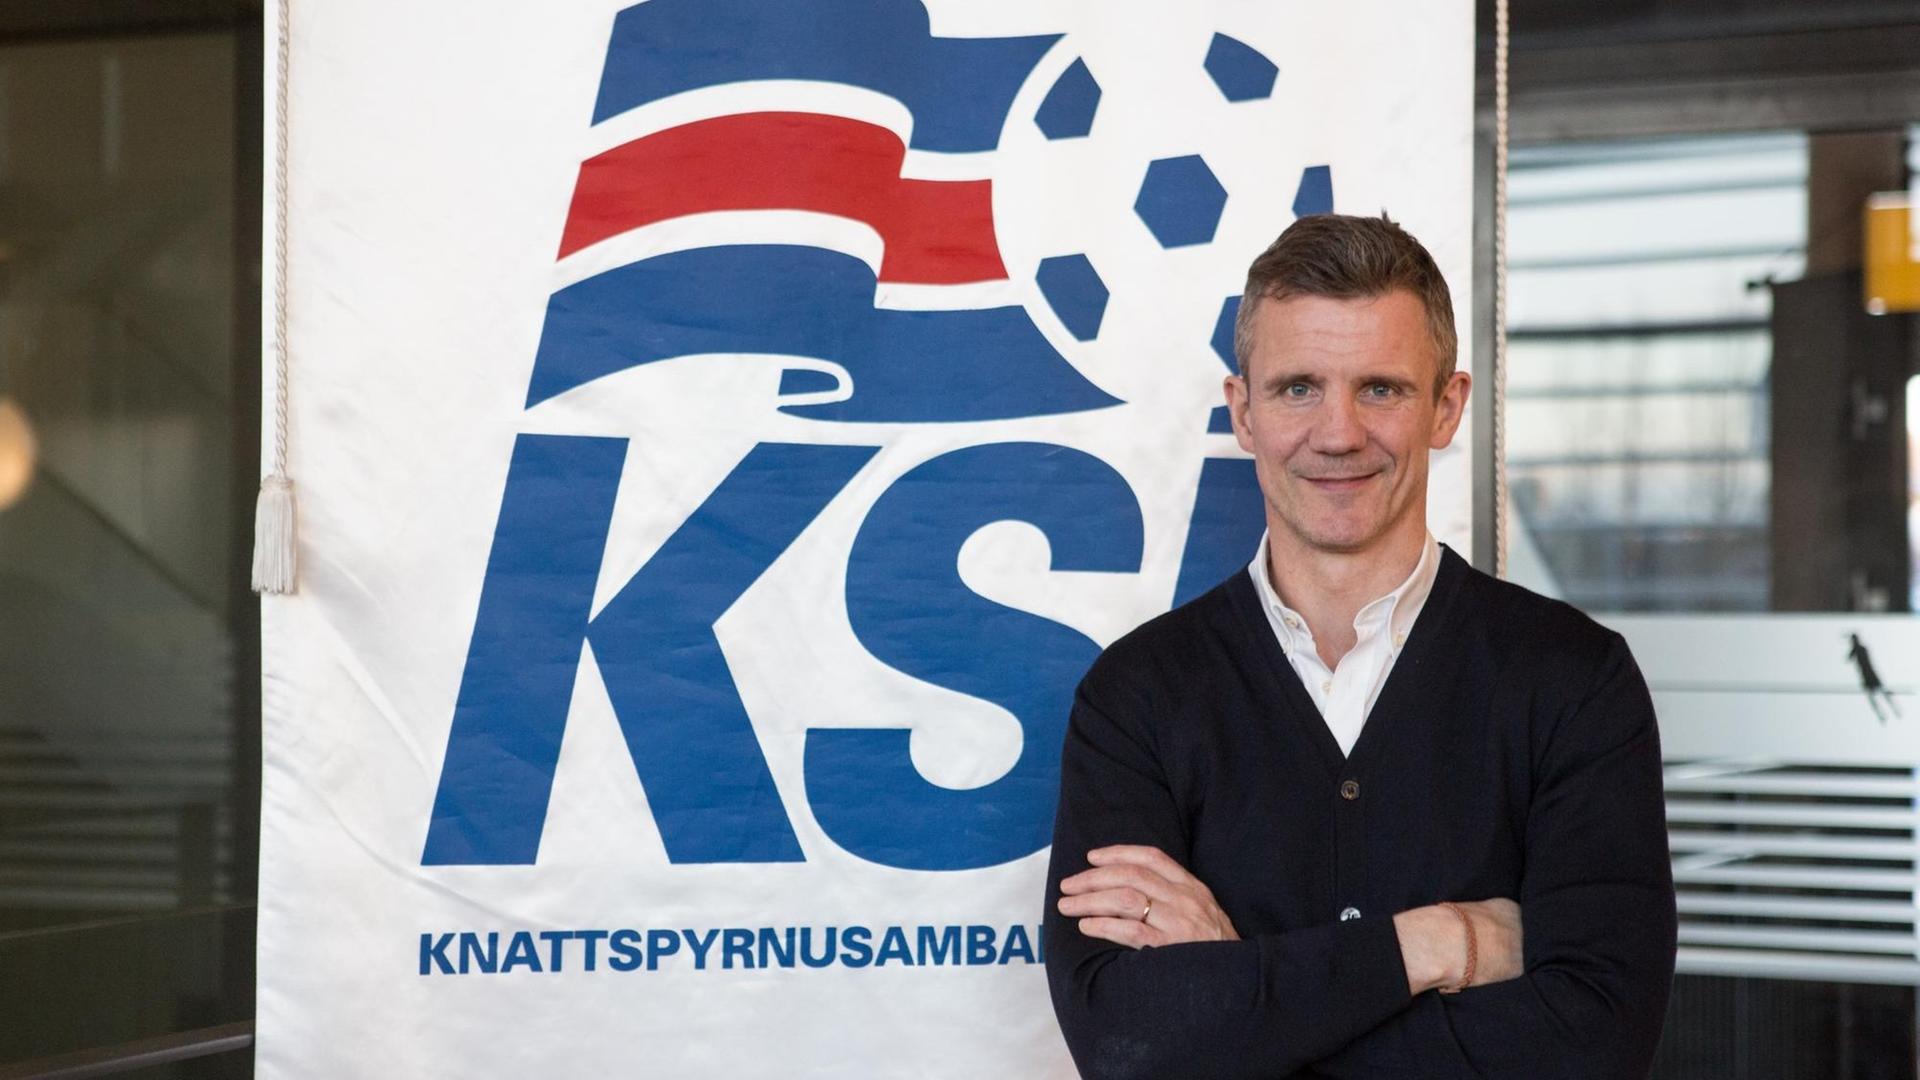 Guðni Bergsson steht mit verschränkten Armen vor einem Plakat des Verbandes KSÍ, er lächelt und trägt ein weißes Hemd und einen schwarzen Strickpulli